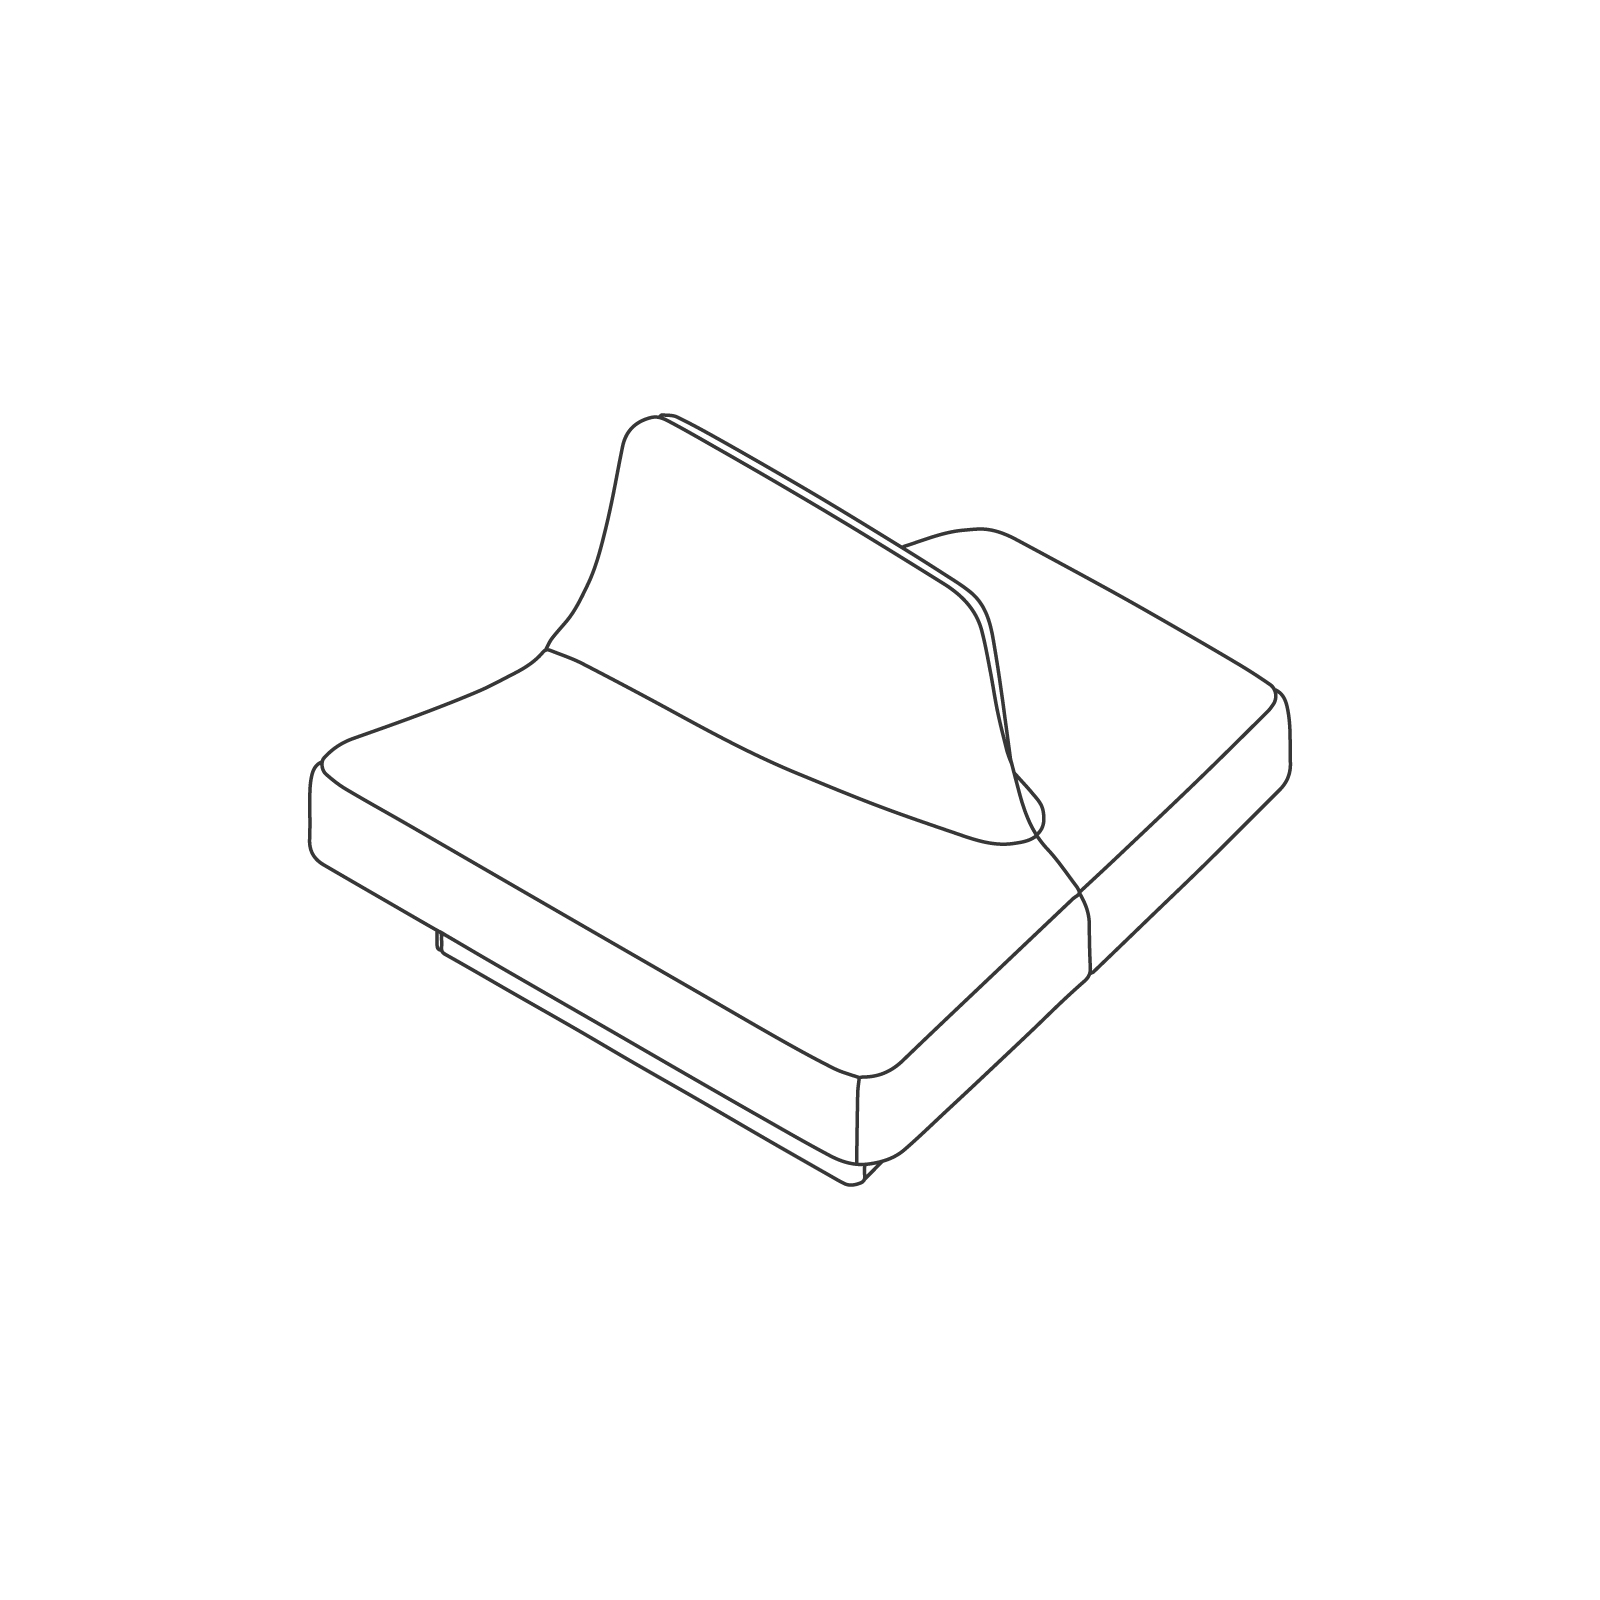 线描图 - Rhyme矮款模块化座椅 - A端